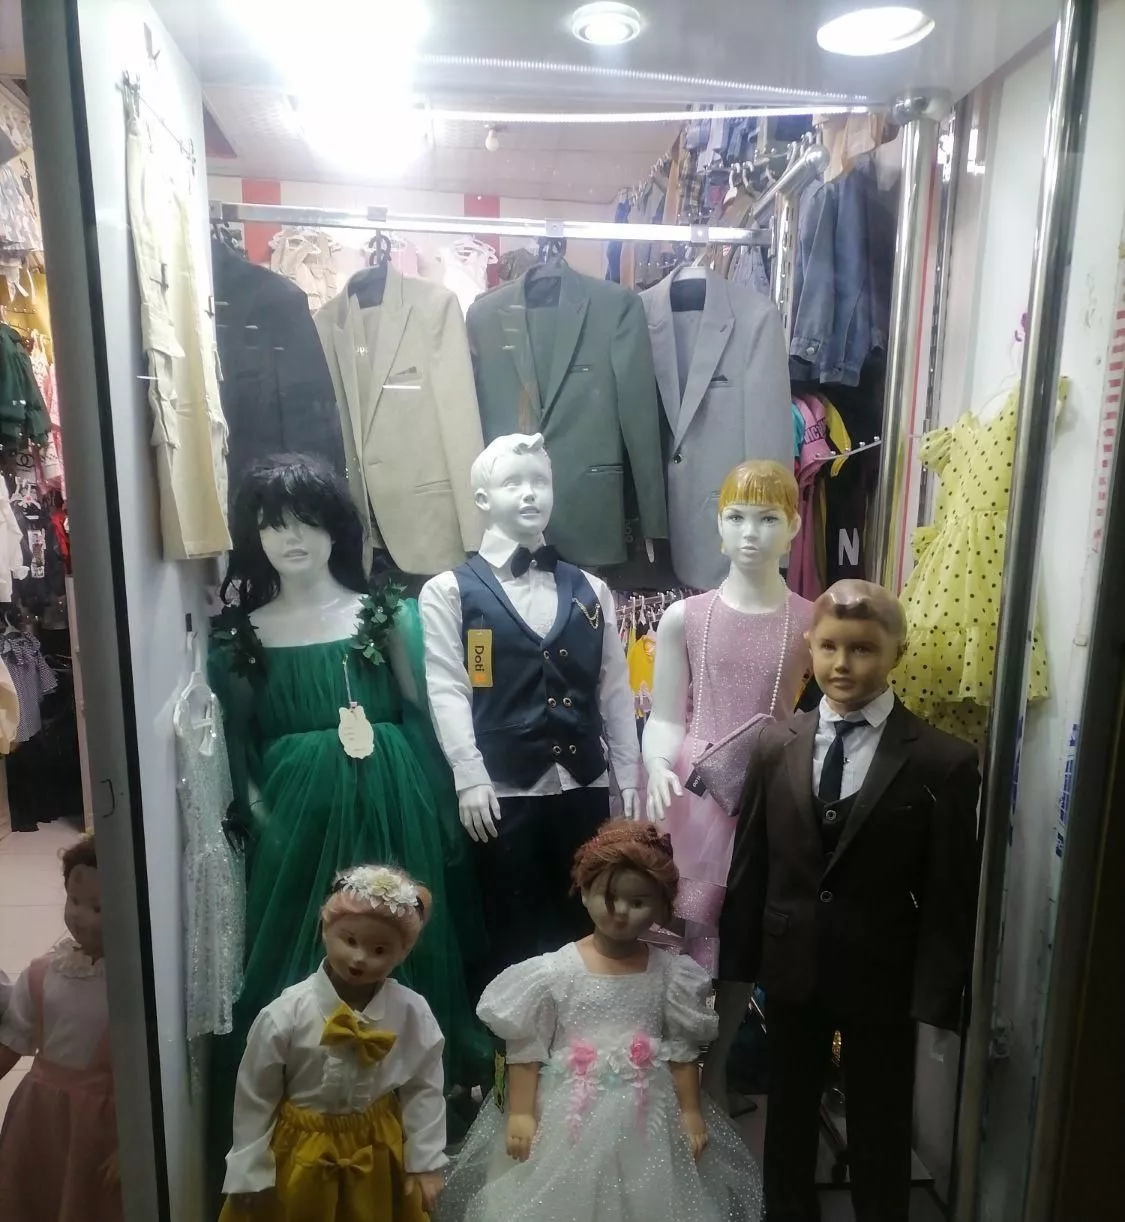 واگذاری مغازه لباس فروشی کودک به صورت